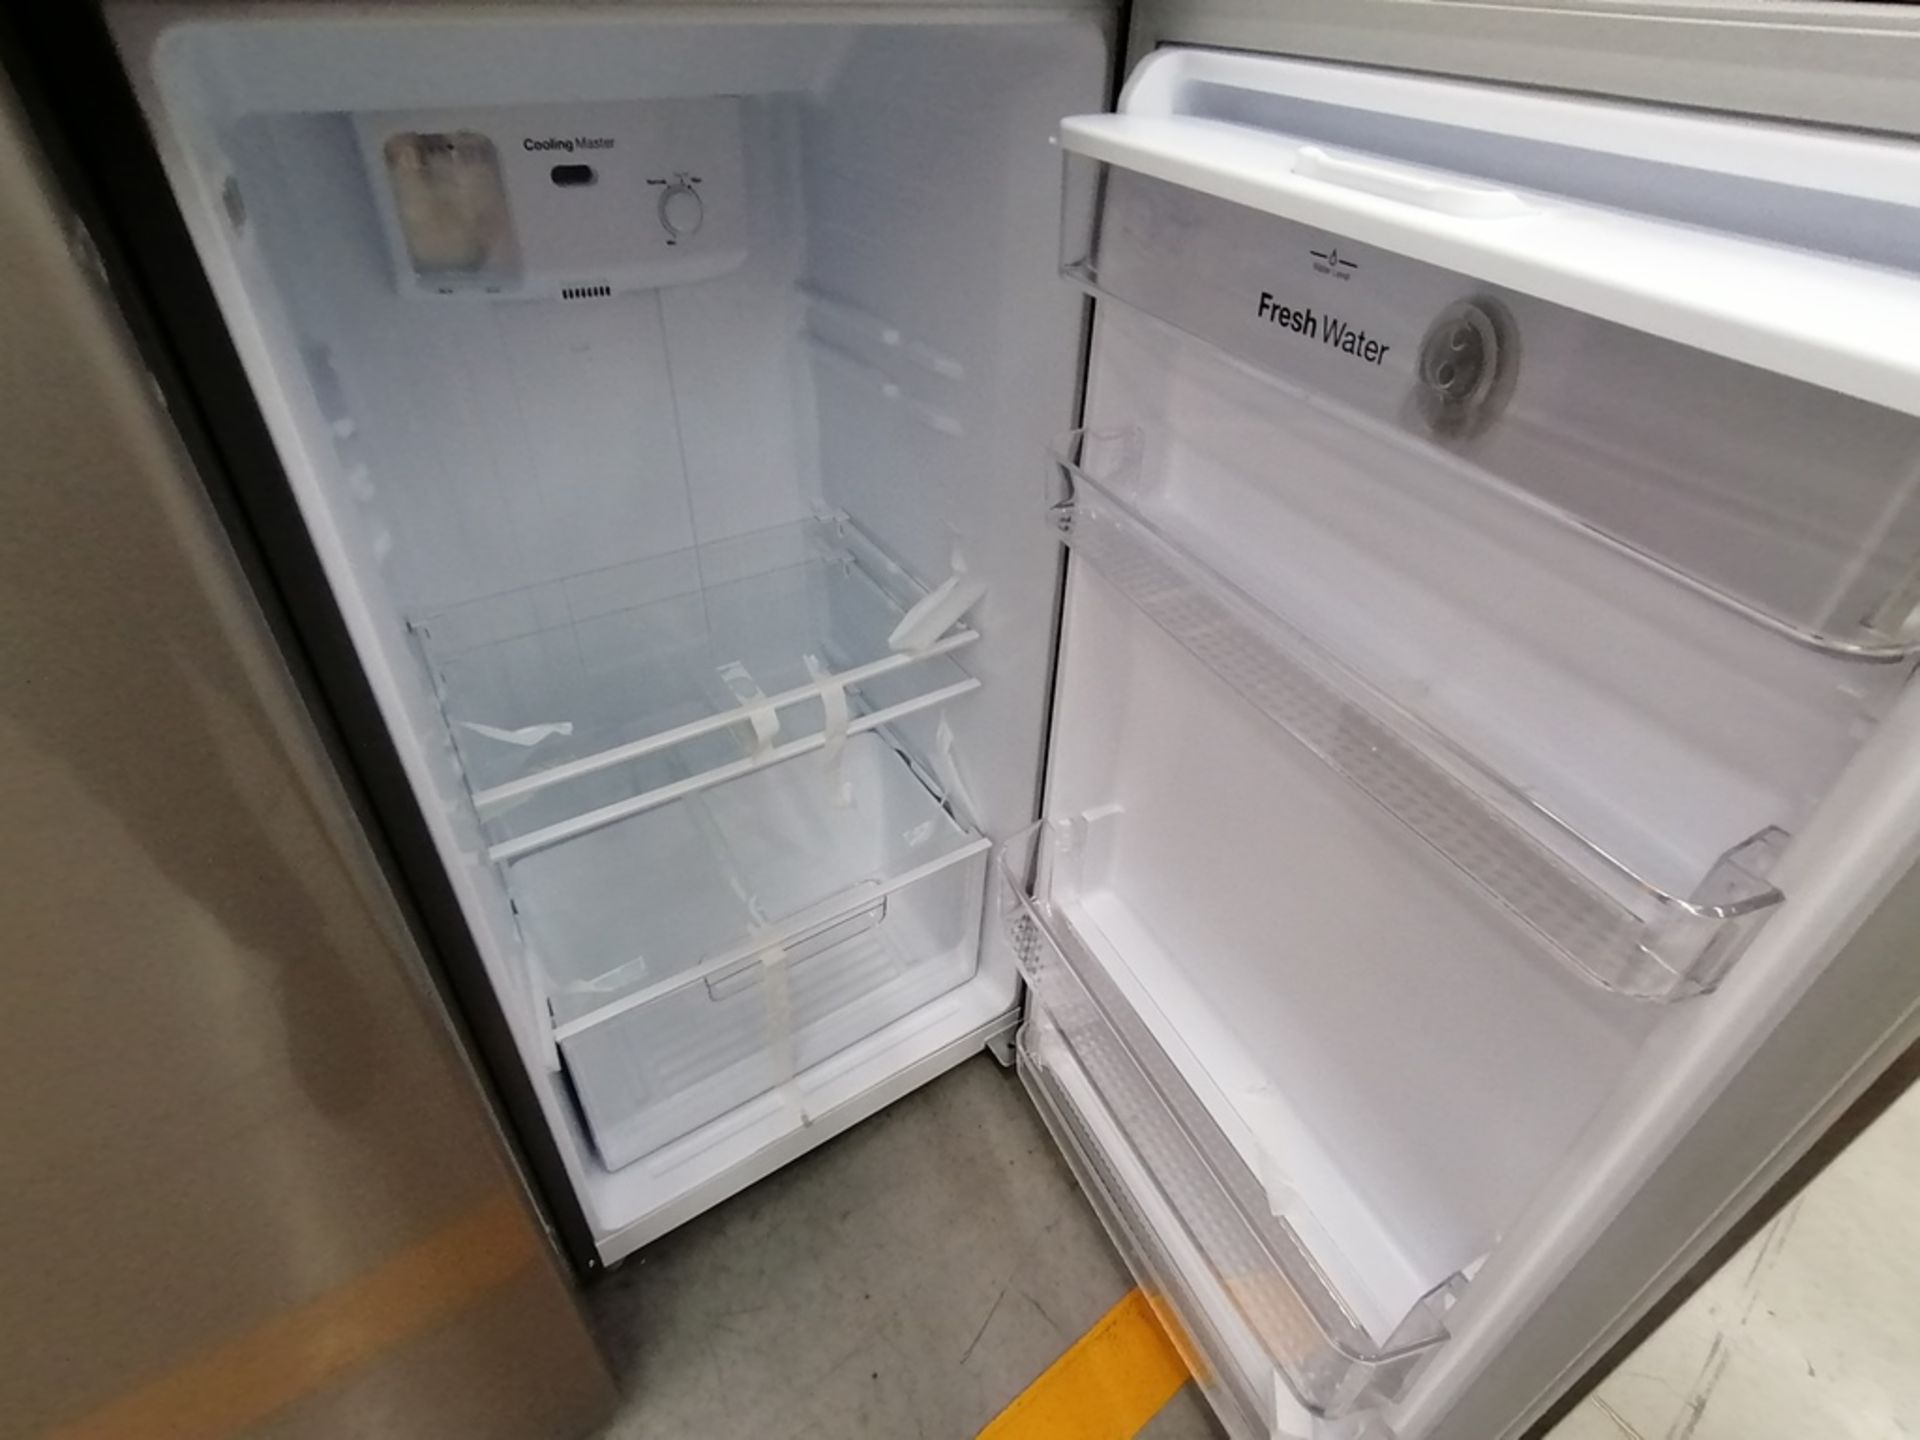 Lote de 2 Refrigeradores incluye: 1 Refrigerador con dispensador de agua, Marca Winia, Modelo DFR32 - Image 14 of 15